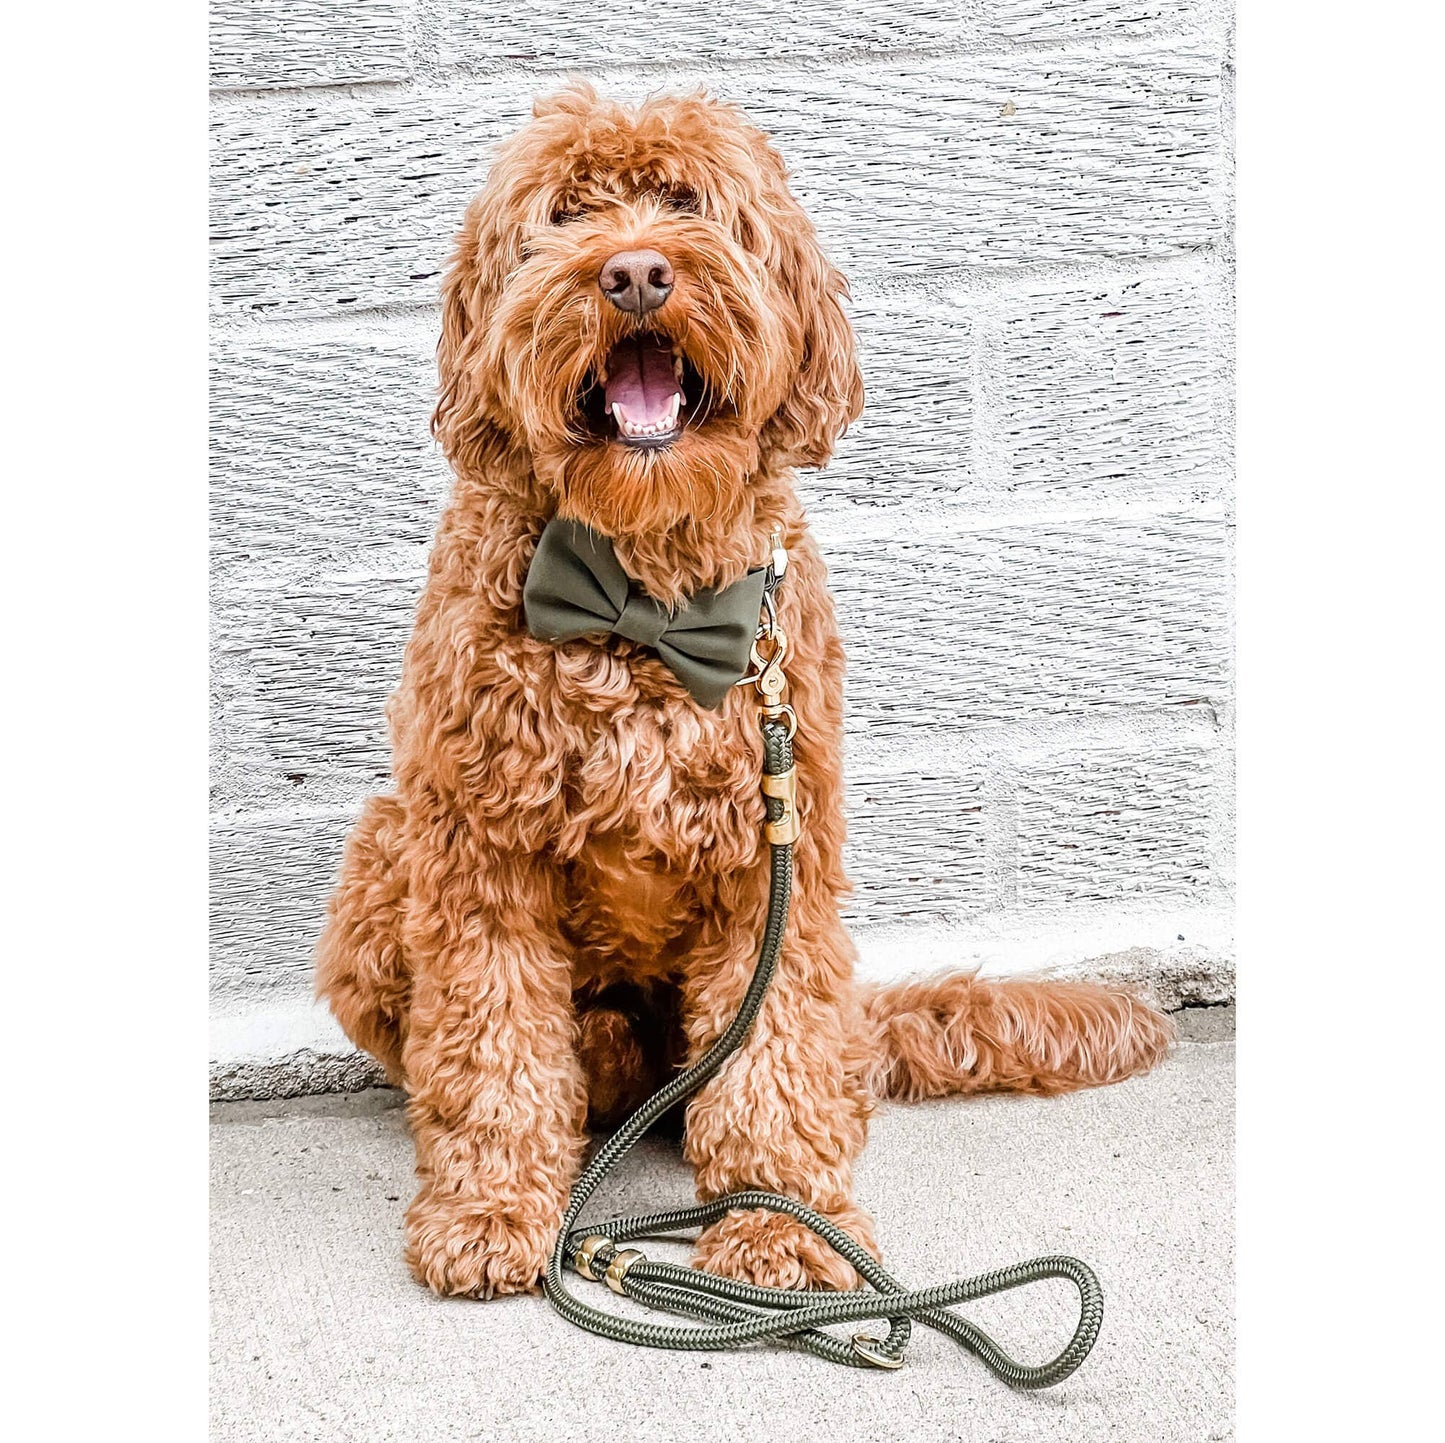 Olive Marine Rope Dog Lead - The Foggy Dog